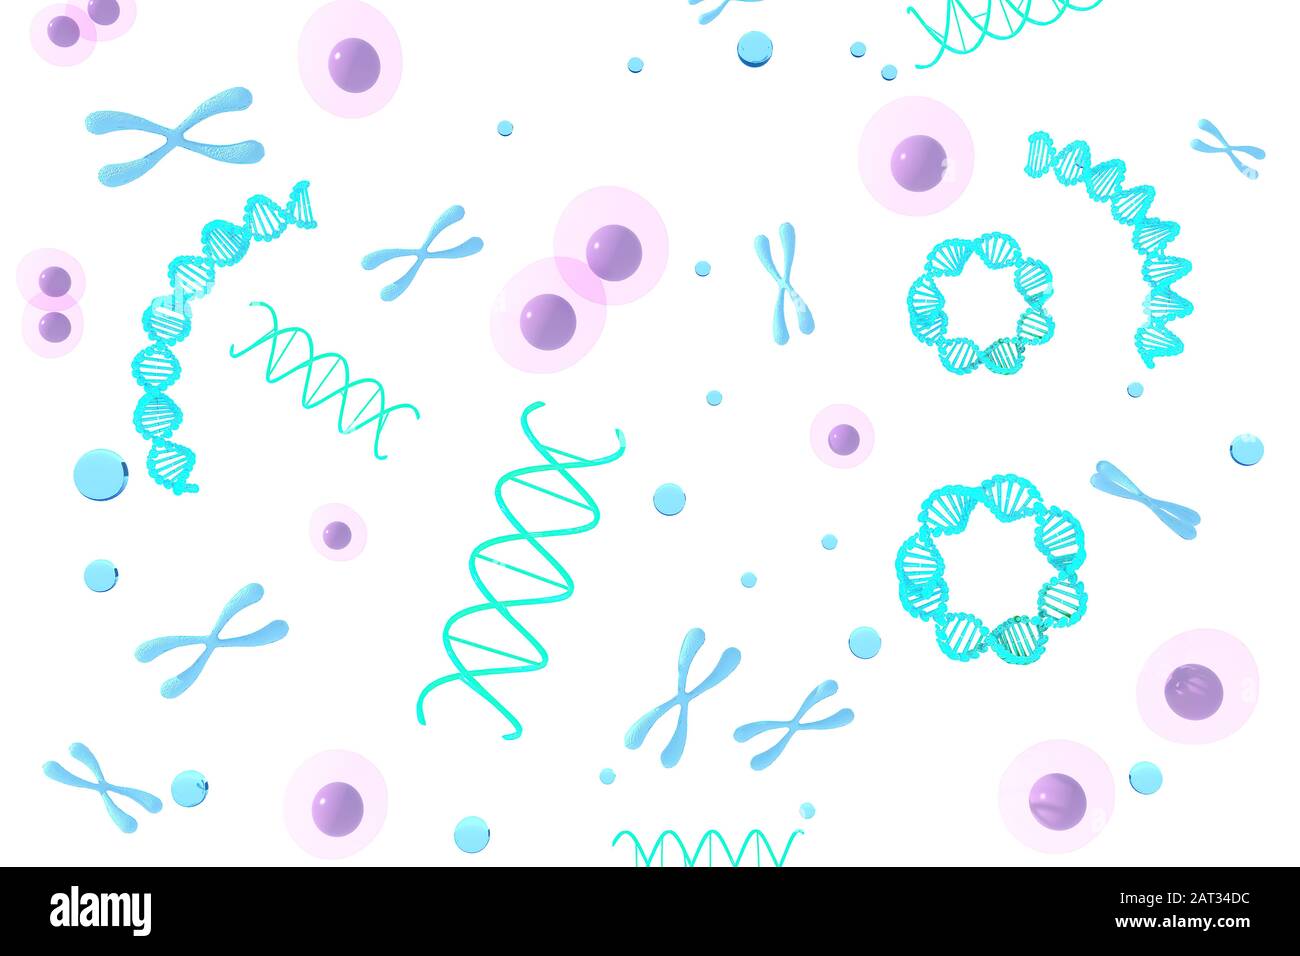 Representación 3D Del Cromosoma Resumen de fondo científico, ilustración 3d. Foto de stock